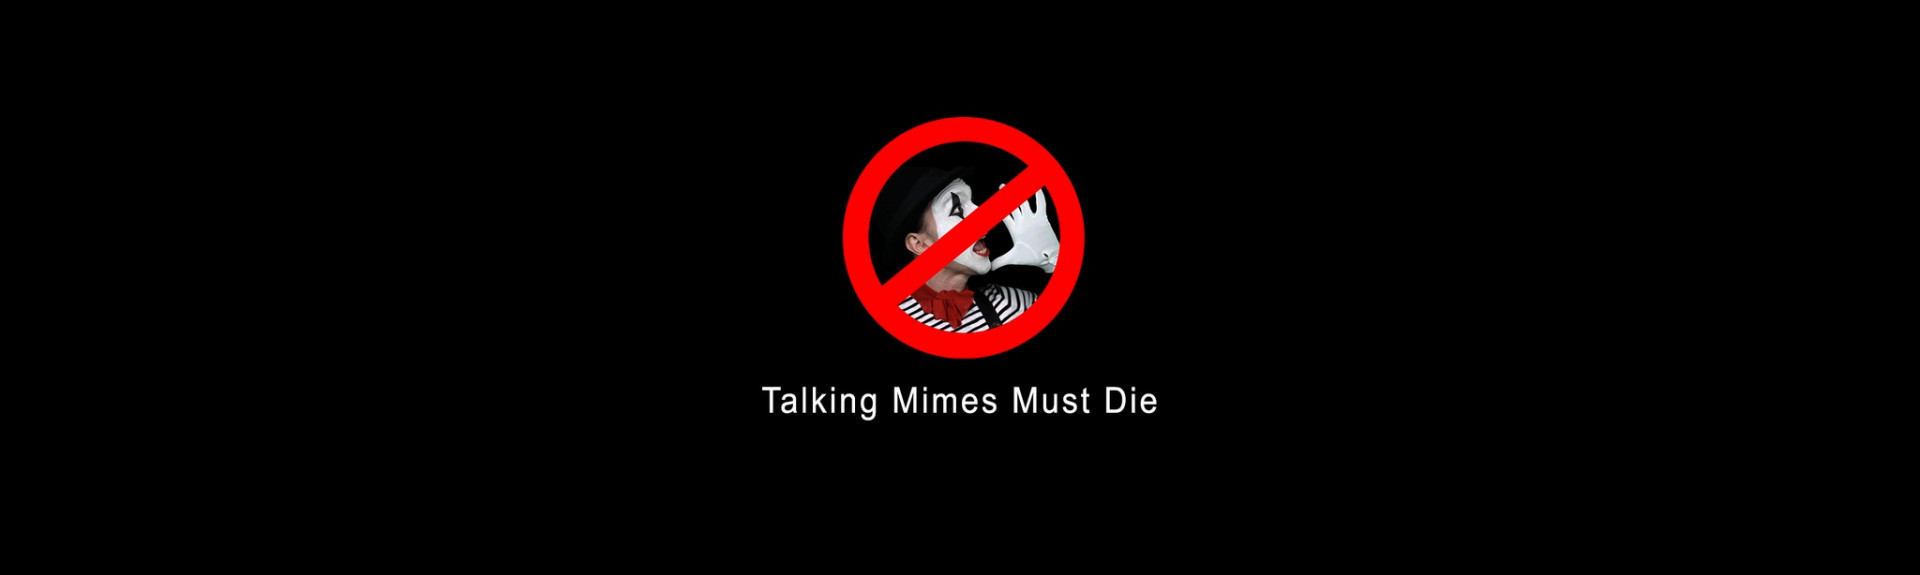 Talking Mimes Must Die